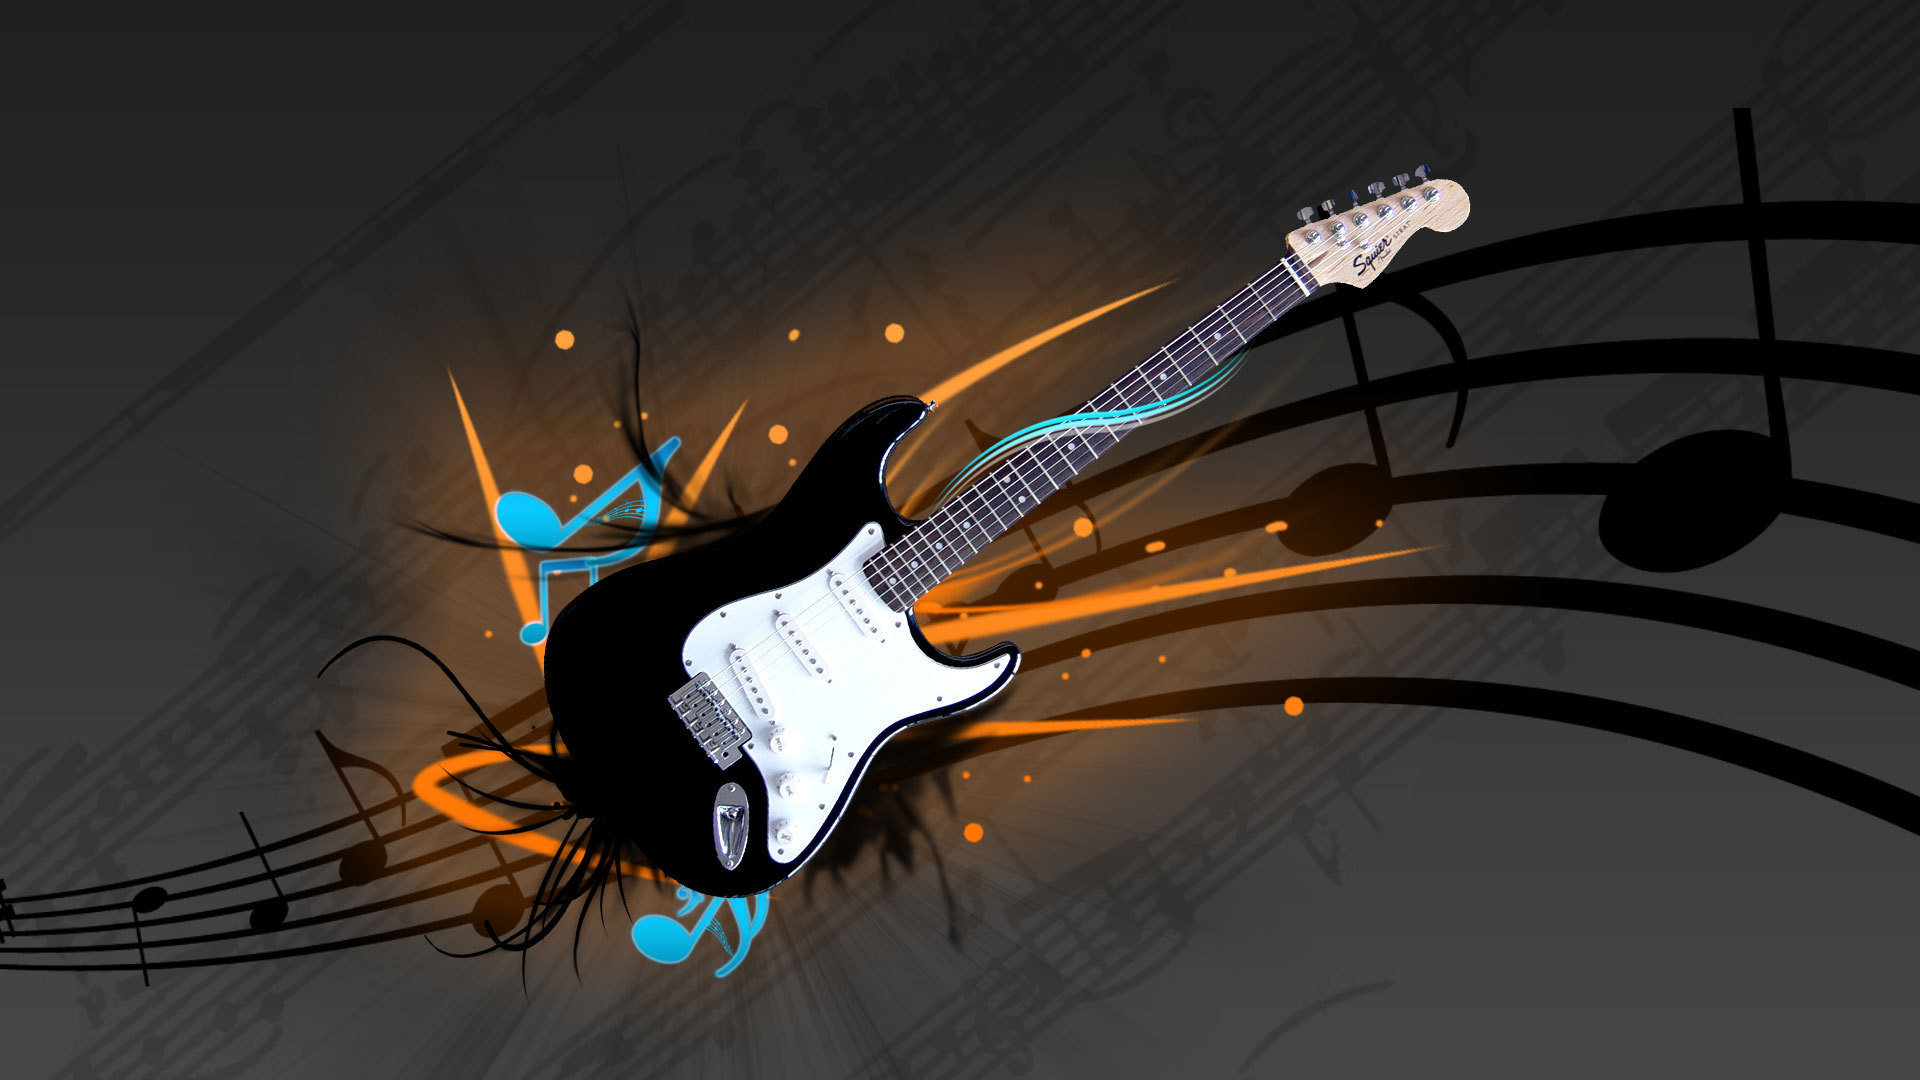 Best Guitar wallpaper ID:249537 for High Resolution full hd 1080p desktop